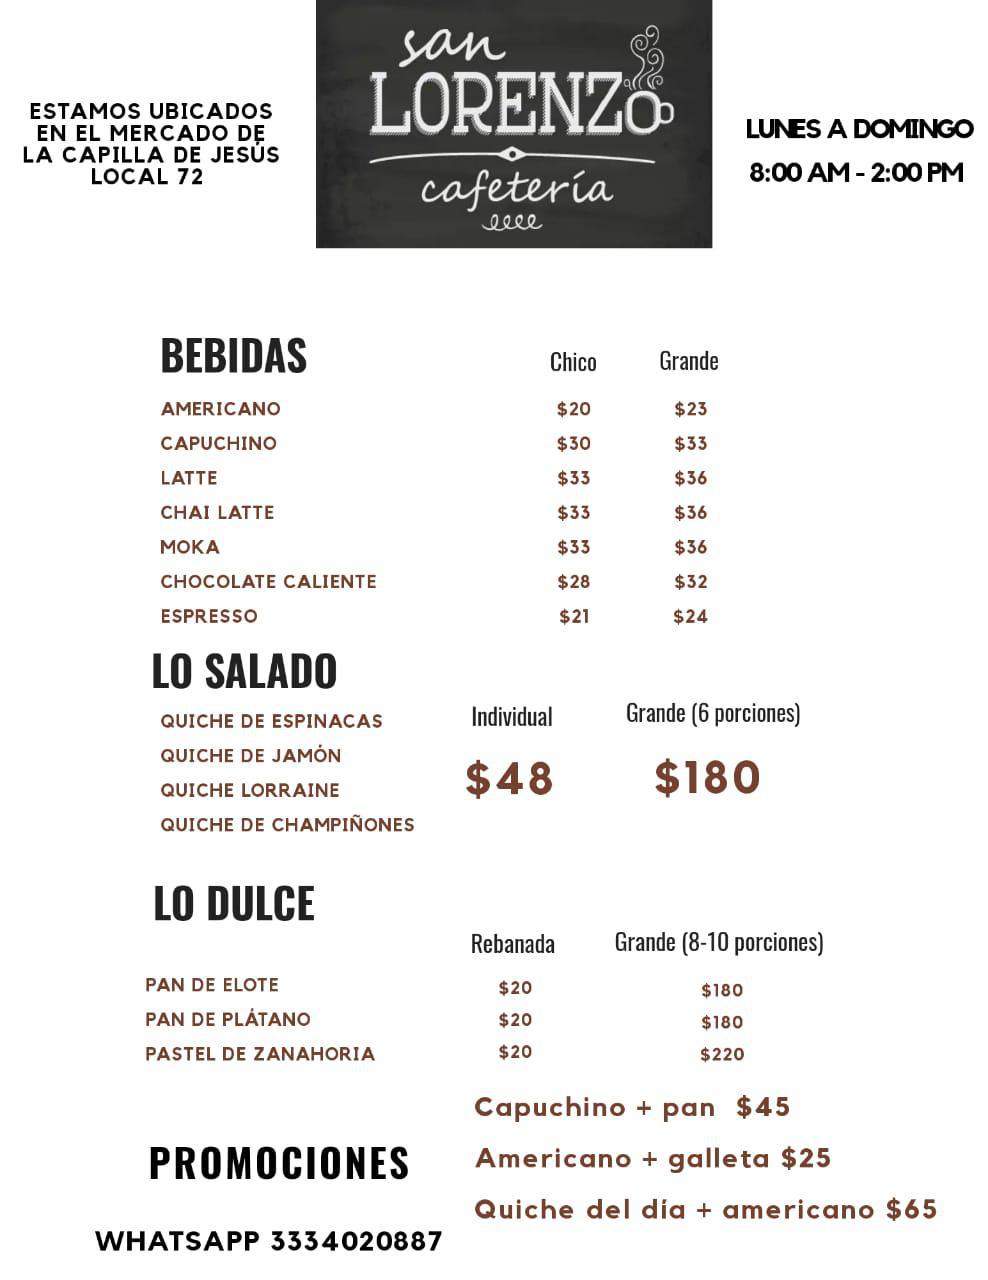 San Lorenzo Café - Guadalajara